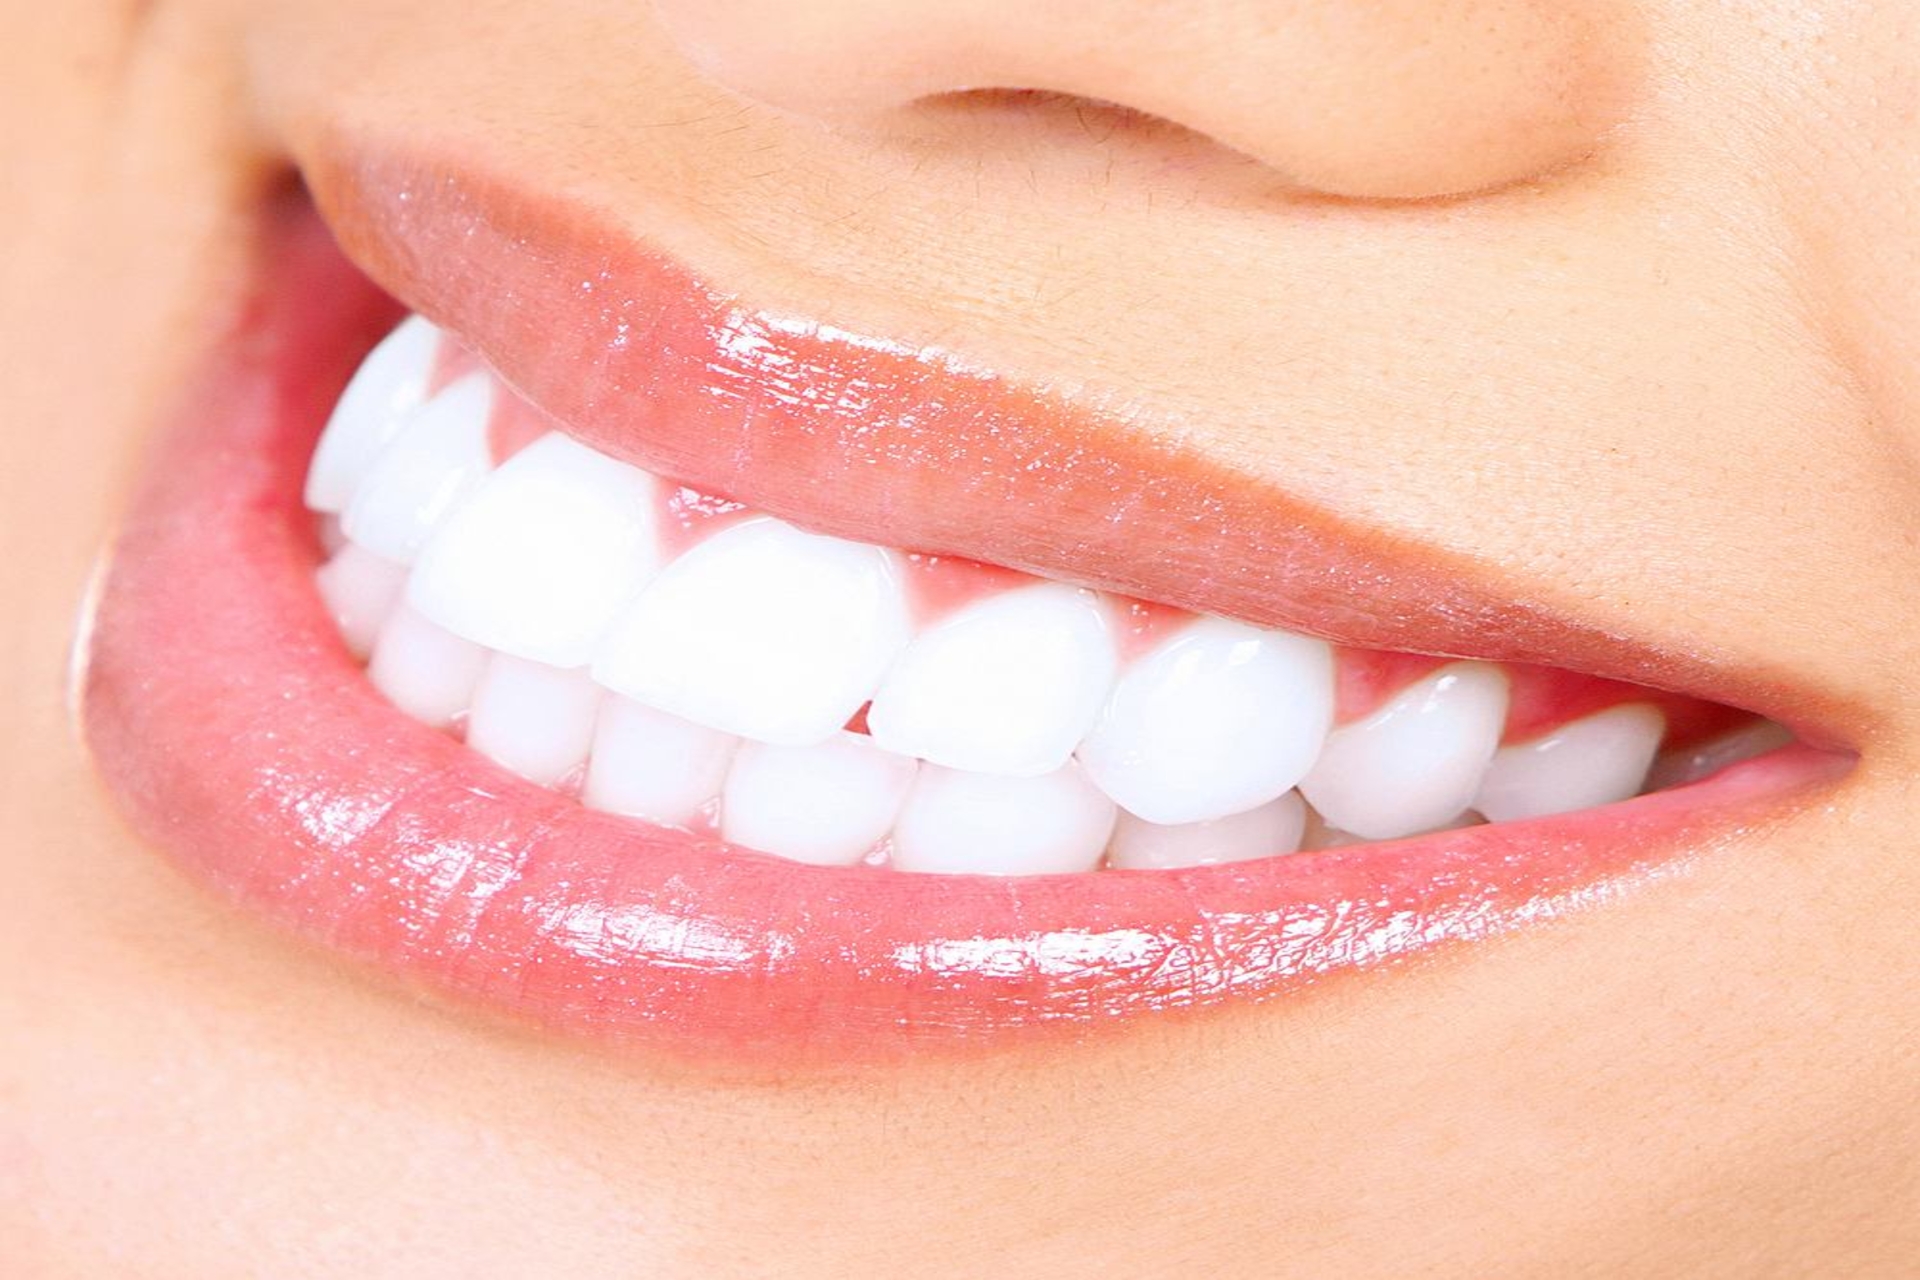 Higiena jamy ustnej - czemu jest tak ważna?